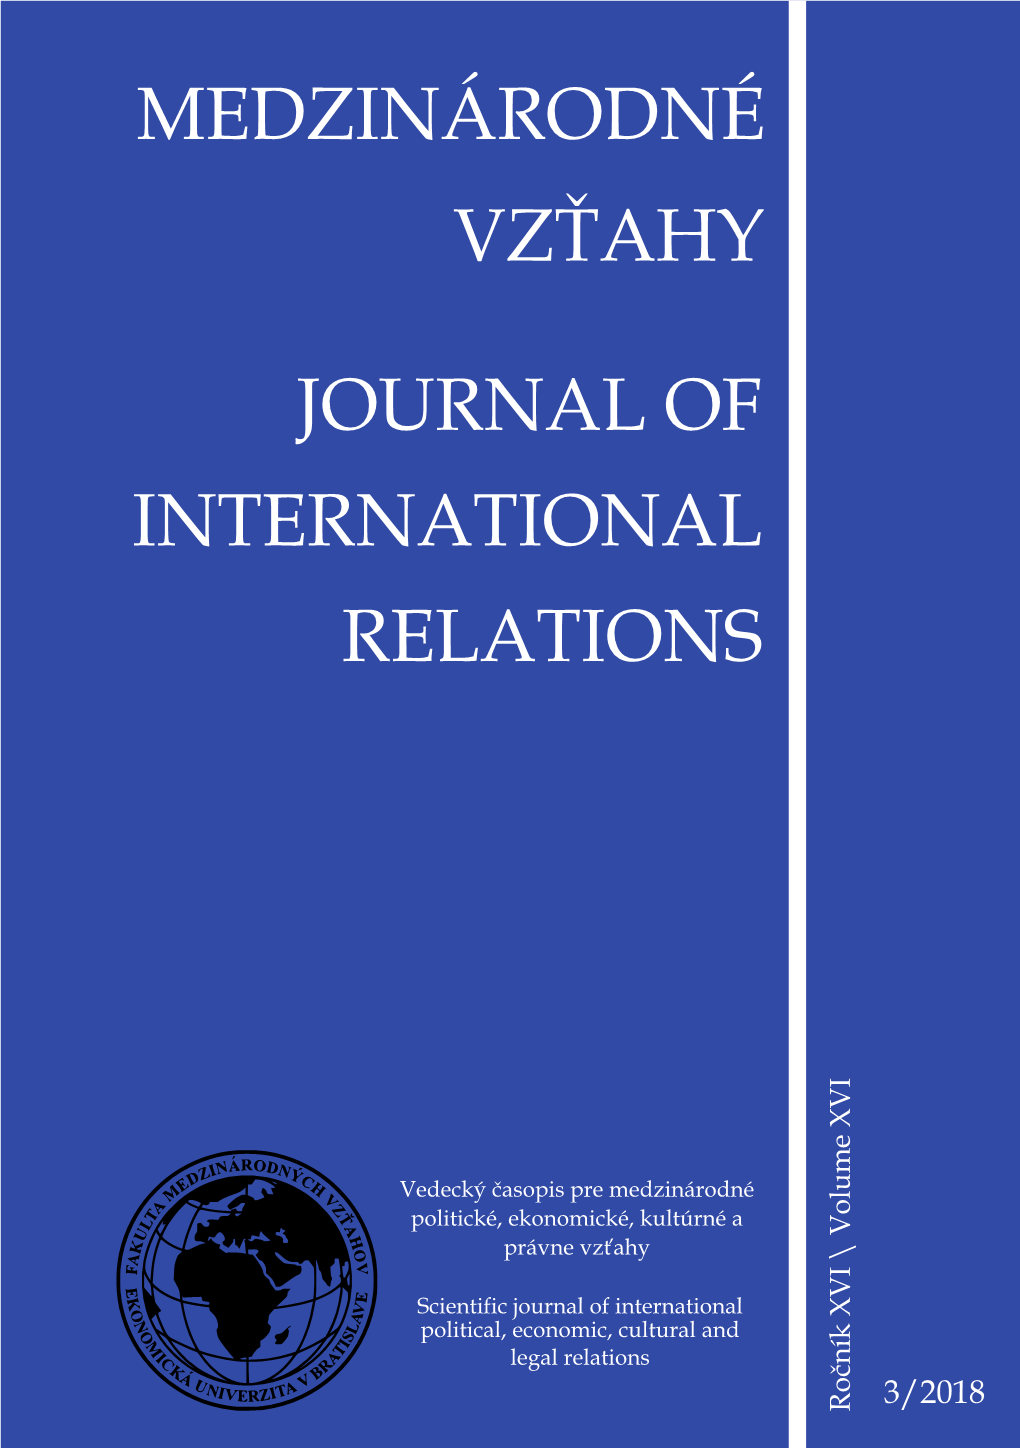 Medzinárodné Vzťahy Journal of International Relations